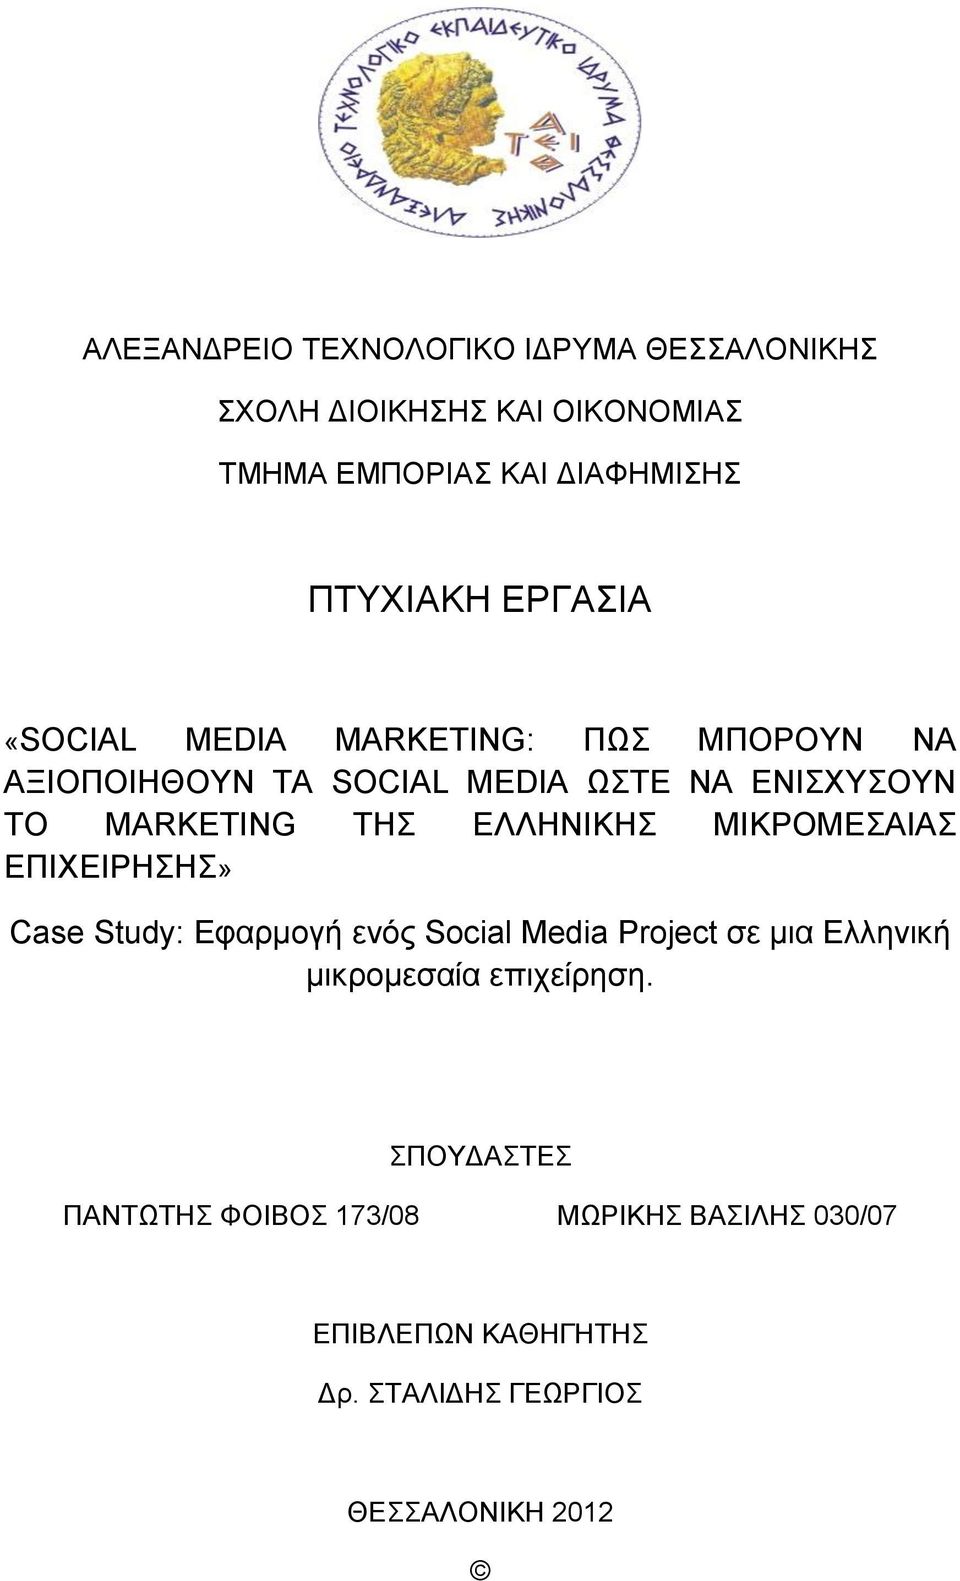 ΕΛΛΗΝΙΚΗΣ ΜΙΚΡΟΜΕΣΑΙΑΣ ΕΠΙΧΕΙΡΗΣΗΣ» Case Study: Εφαρμογή ενός Social Media Project σε μια Ελληνική μικρομεσαία